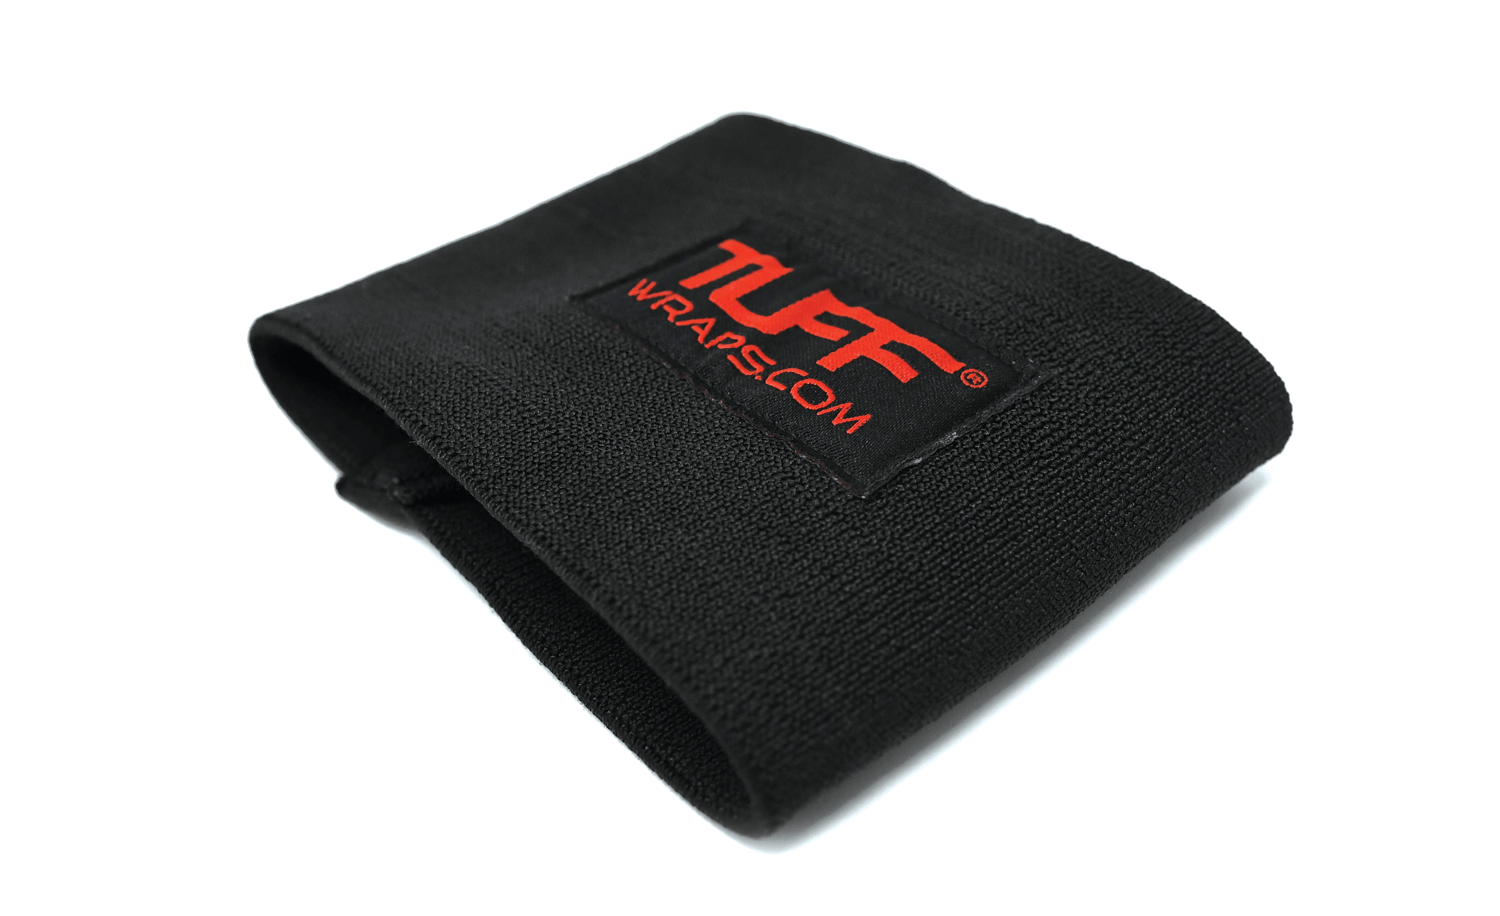 TUFF CUFF 4" STIFF Compression Support - Black Out elbow compression cuff